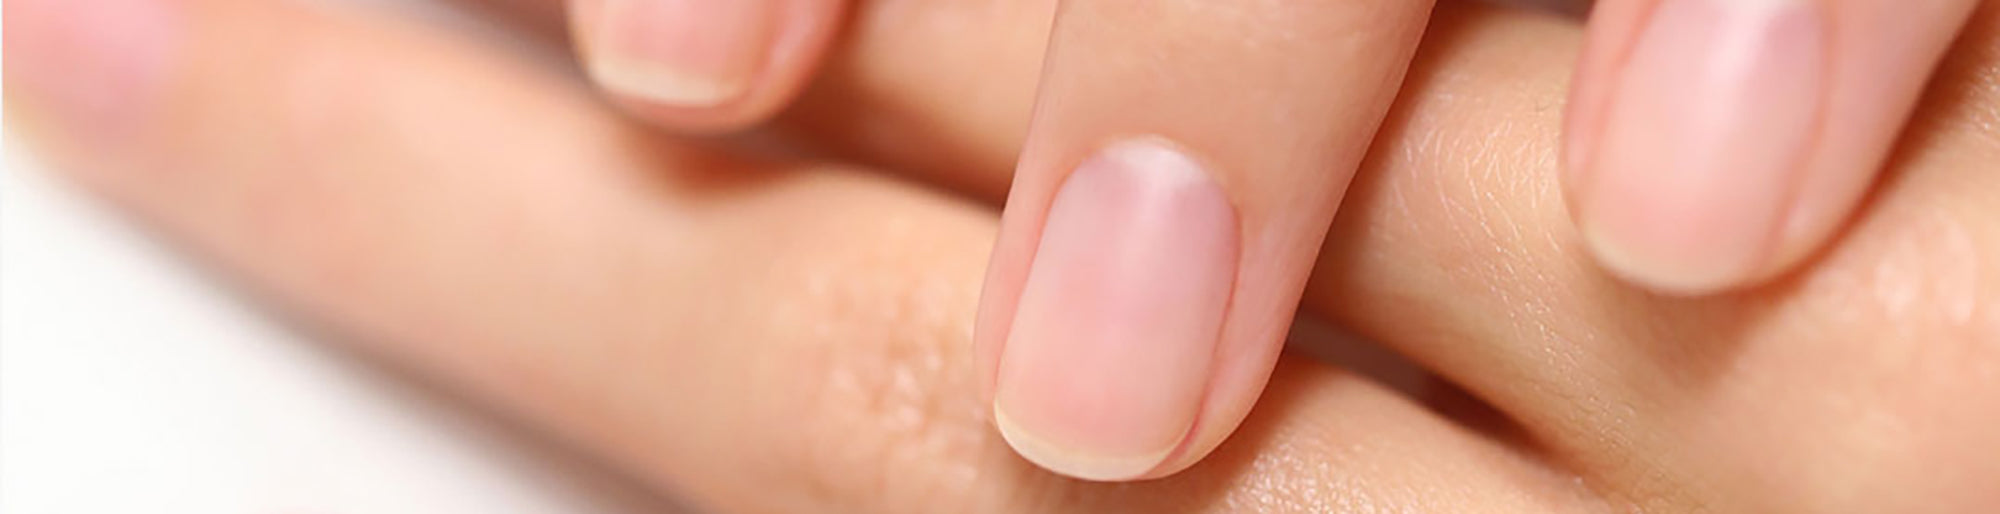 This is the key to stopping nail biting. #nailbiting #nails #nailcare |  TikTok